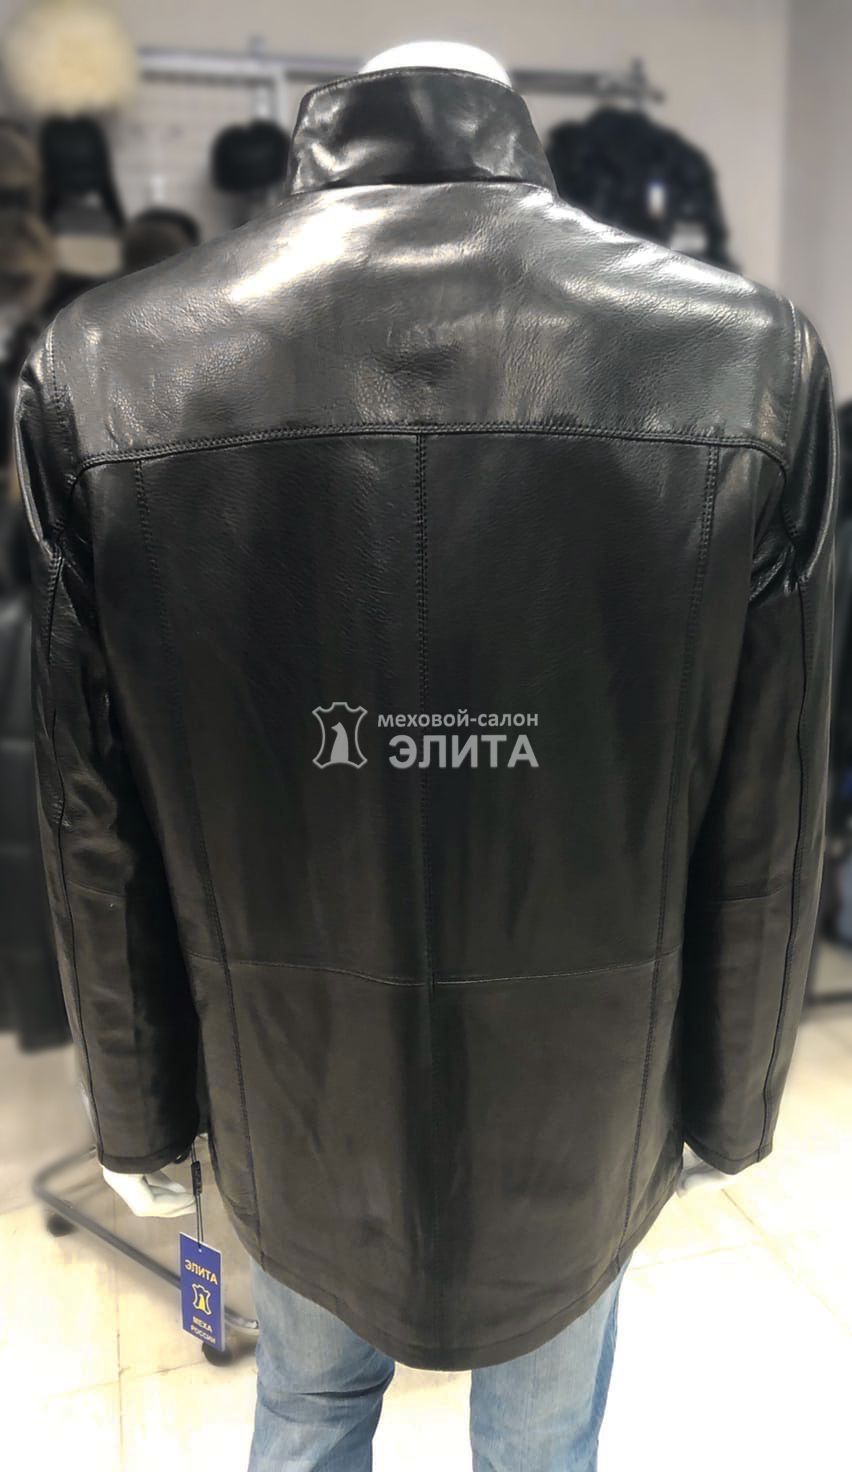 Куртка из натуральной кожи м.BN8735  р-р 56-58, цена 15520 рублей в интернет-магазине кожи и меха ЭЛИТА. Вид 2